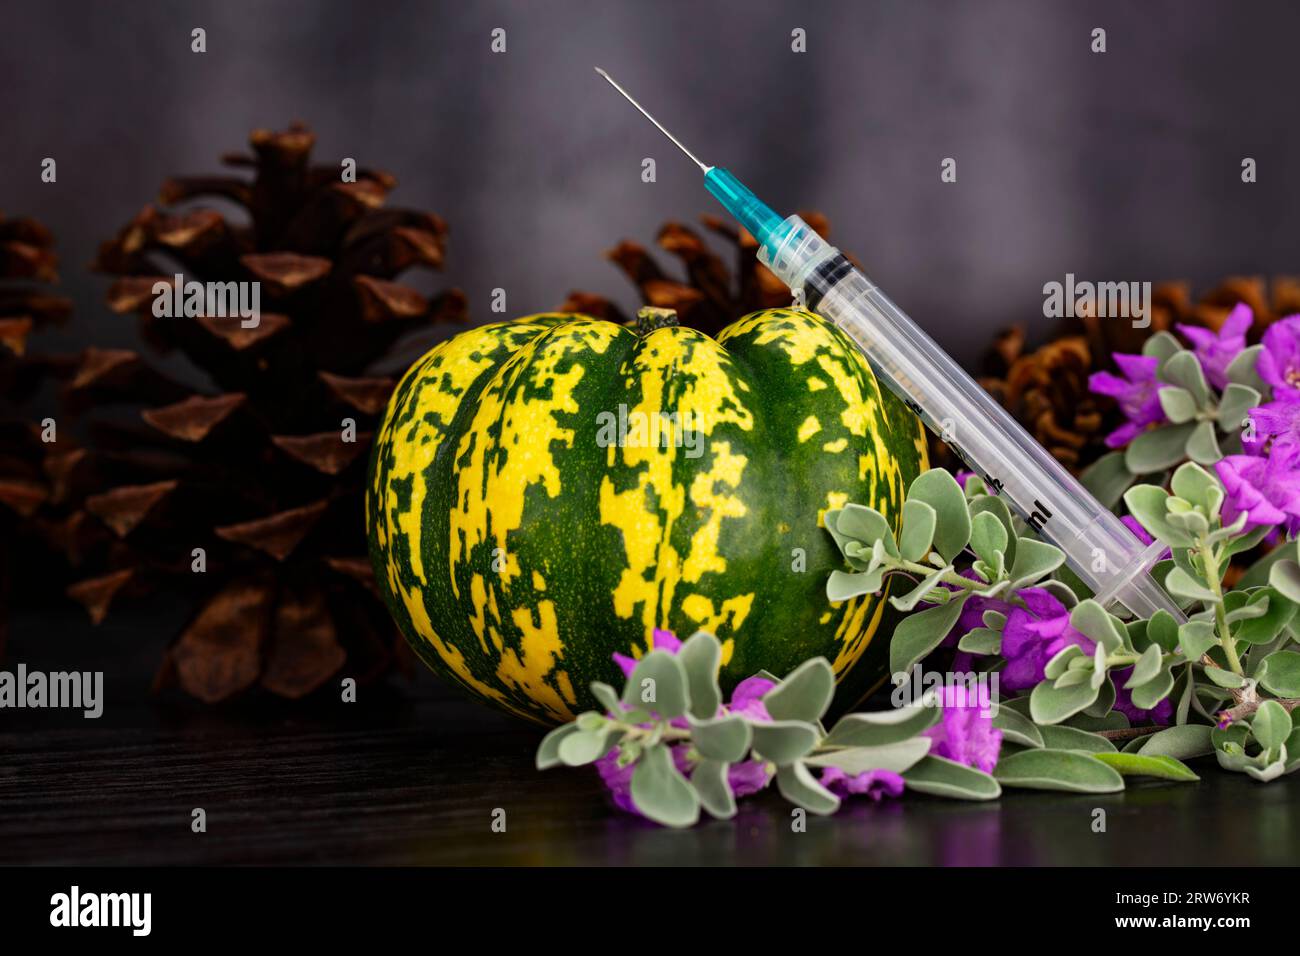 Aggiornamento autunnale in immunizzazioni e vaccini visto in siringa posta con squash autunnale, coni di pino, e fiori viola Texas Ranger su dorso di legno scuro Foto Stock